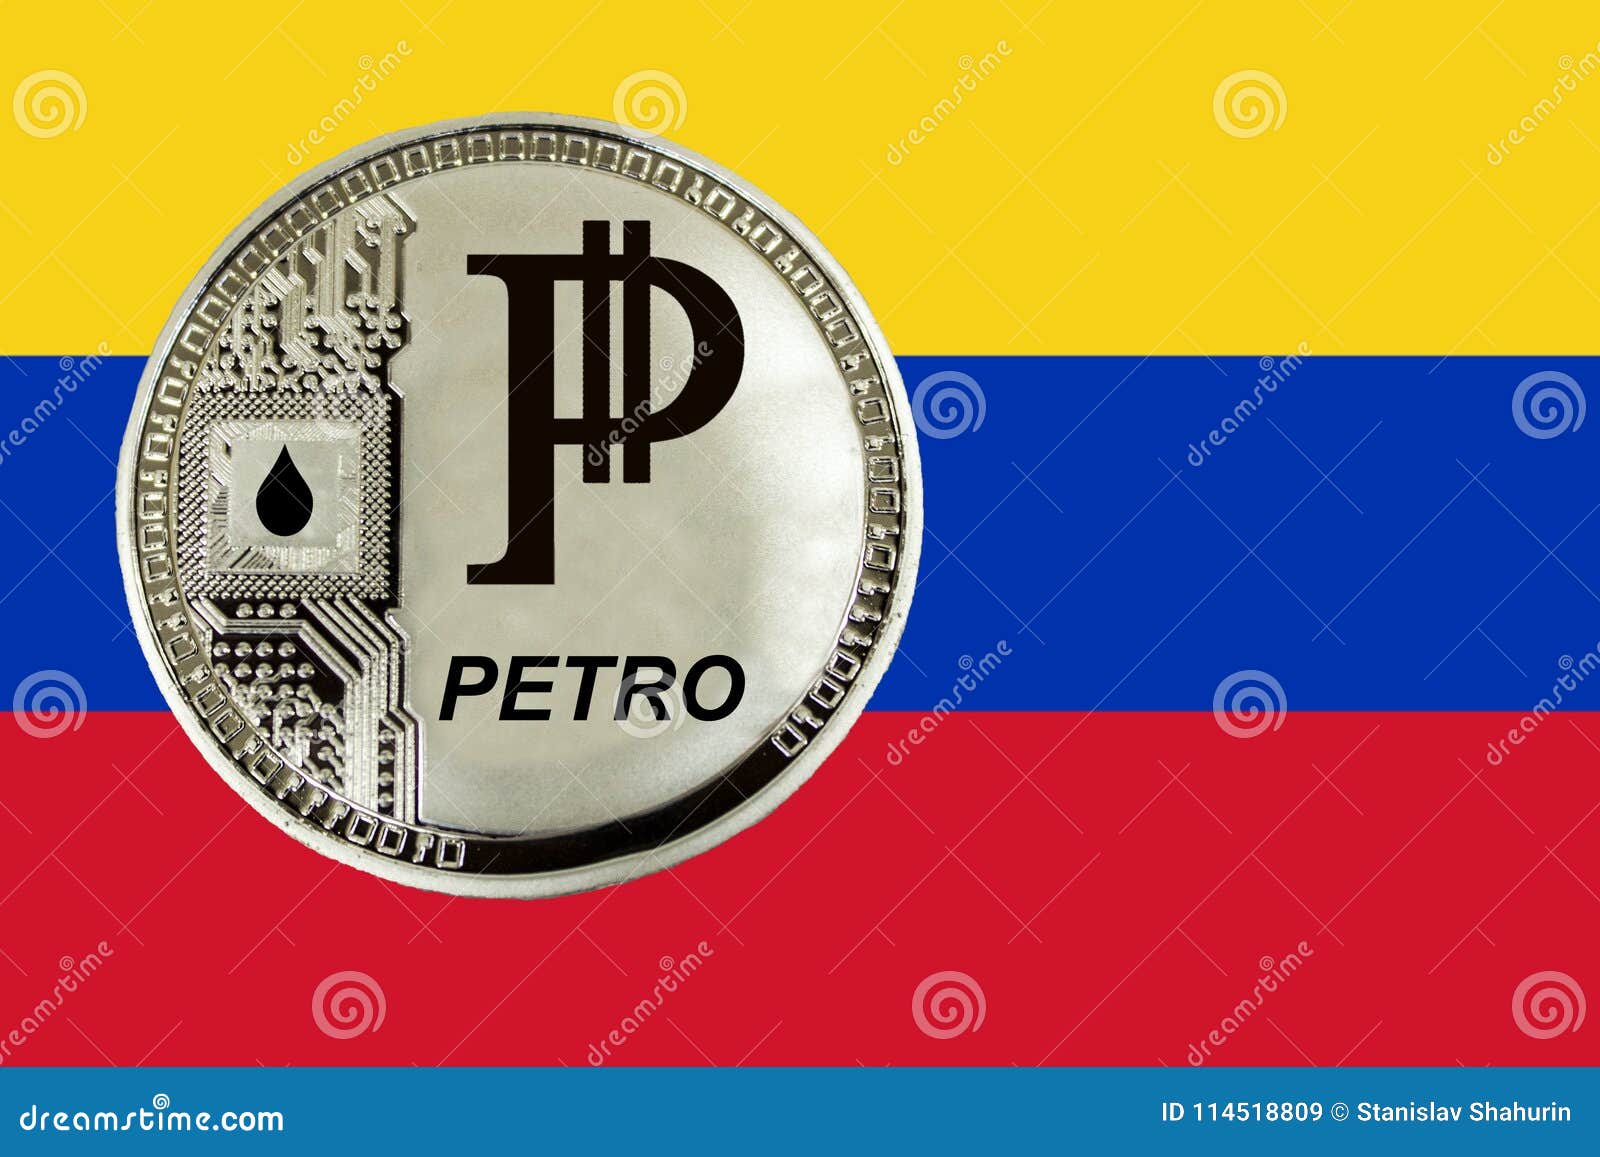 petro cryptocurrency price venezuela